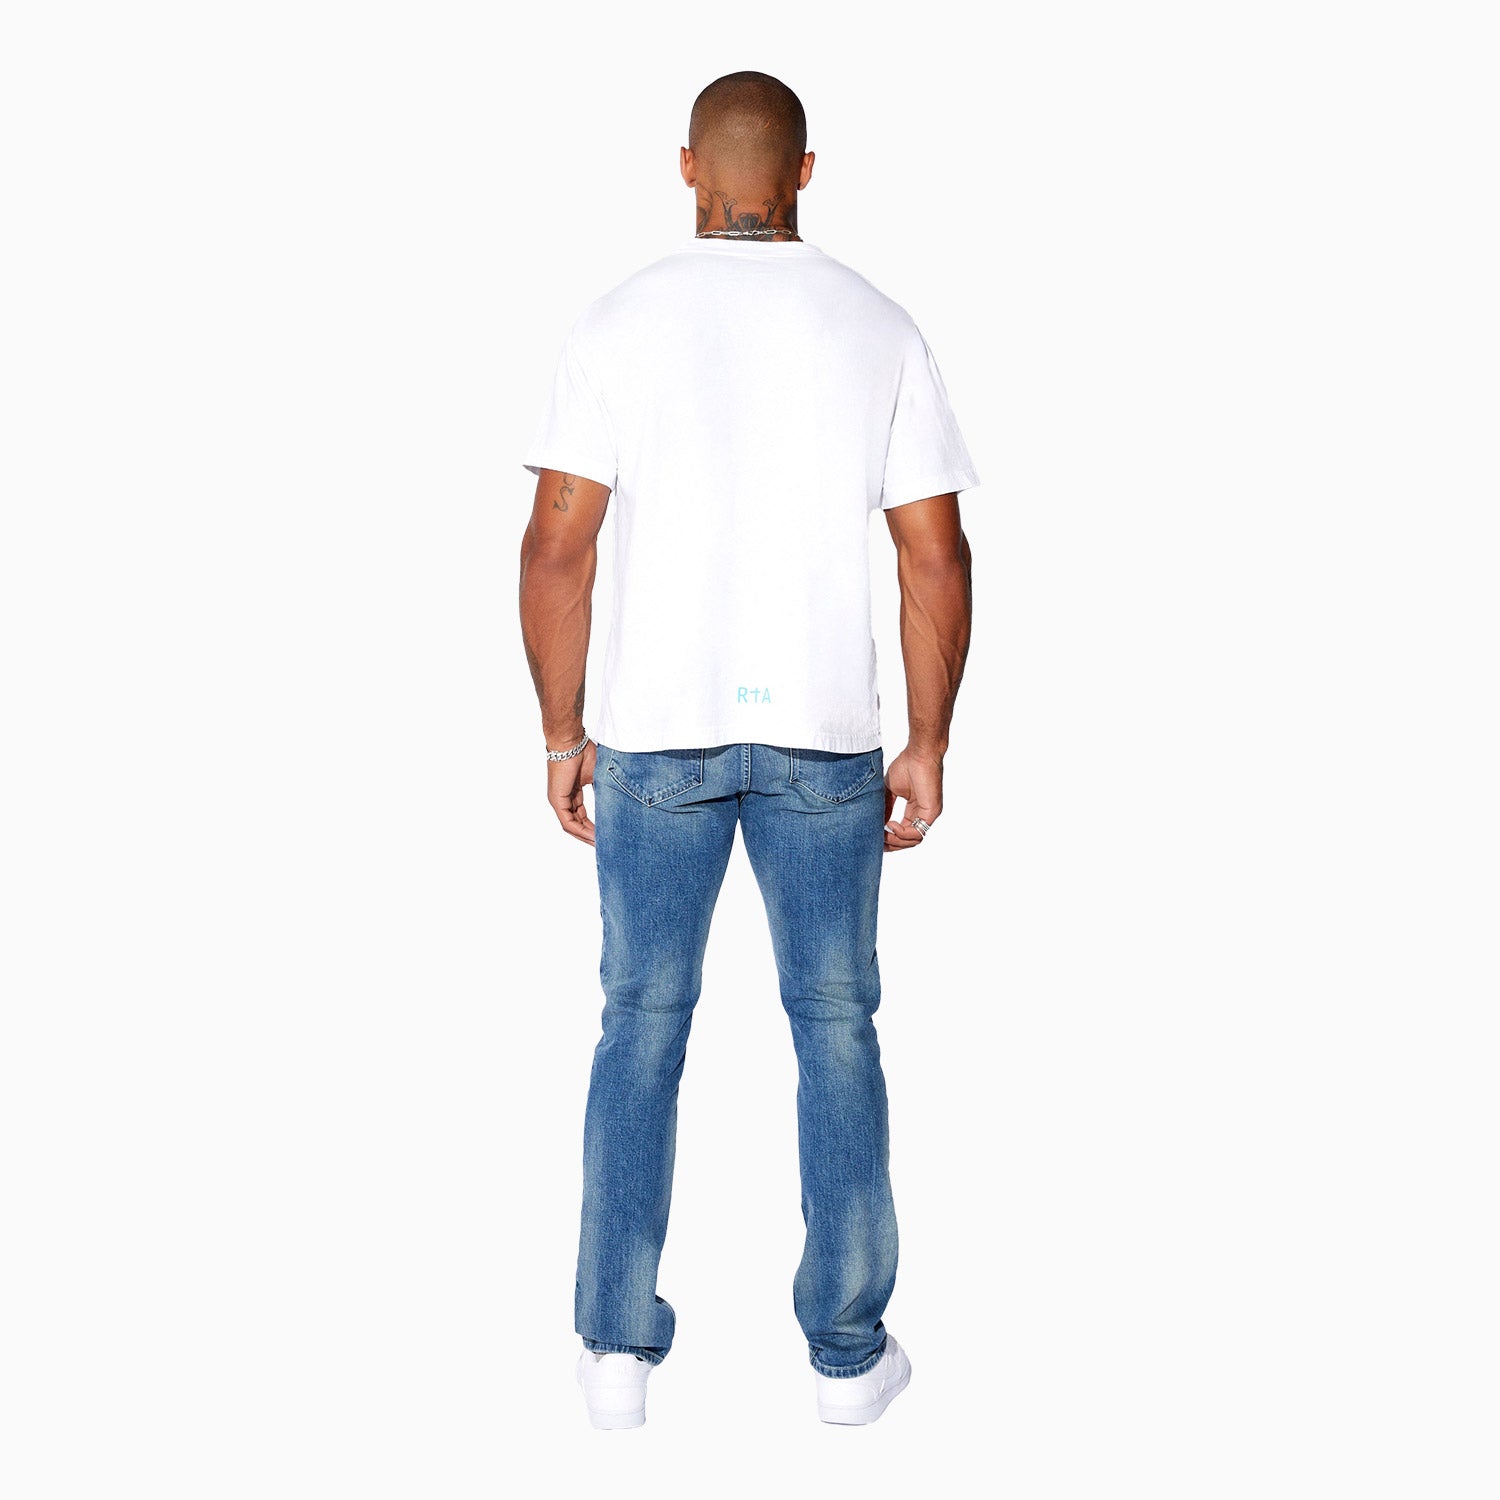 rta-mens-short-sleeve-logo-t-shirt-mu23k621-bluwht